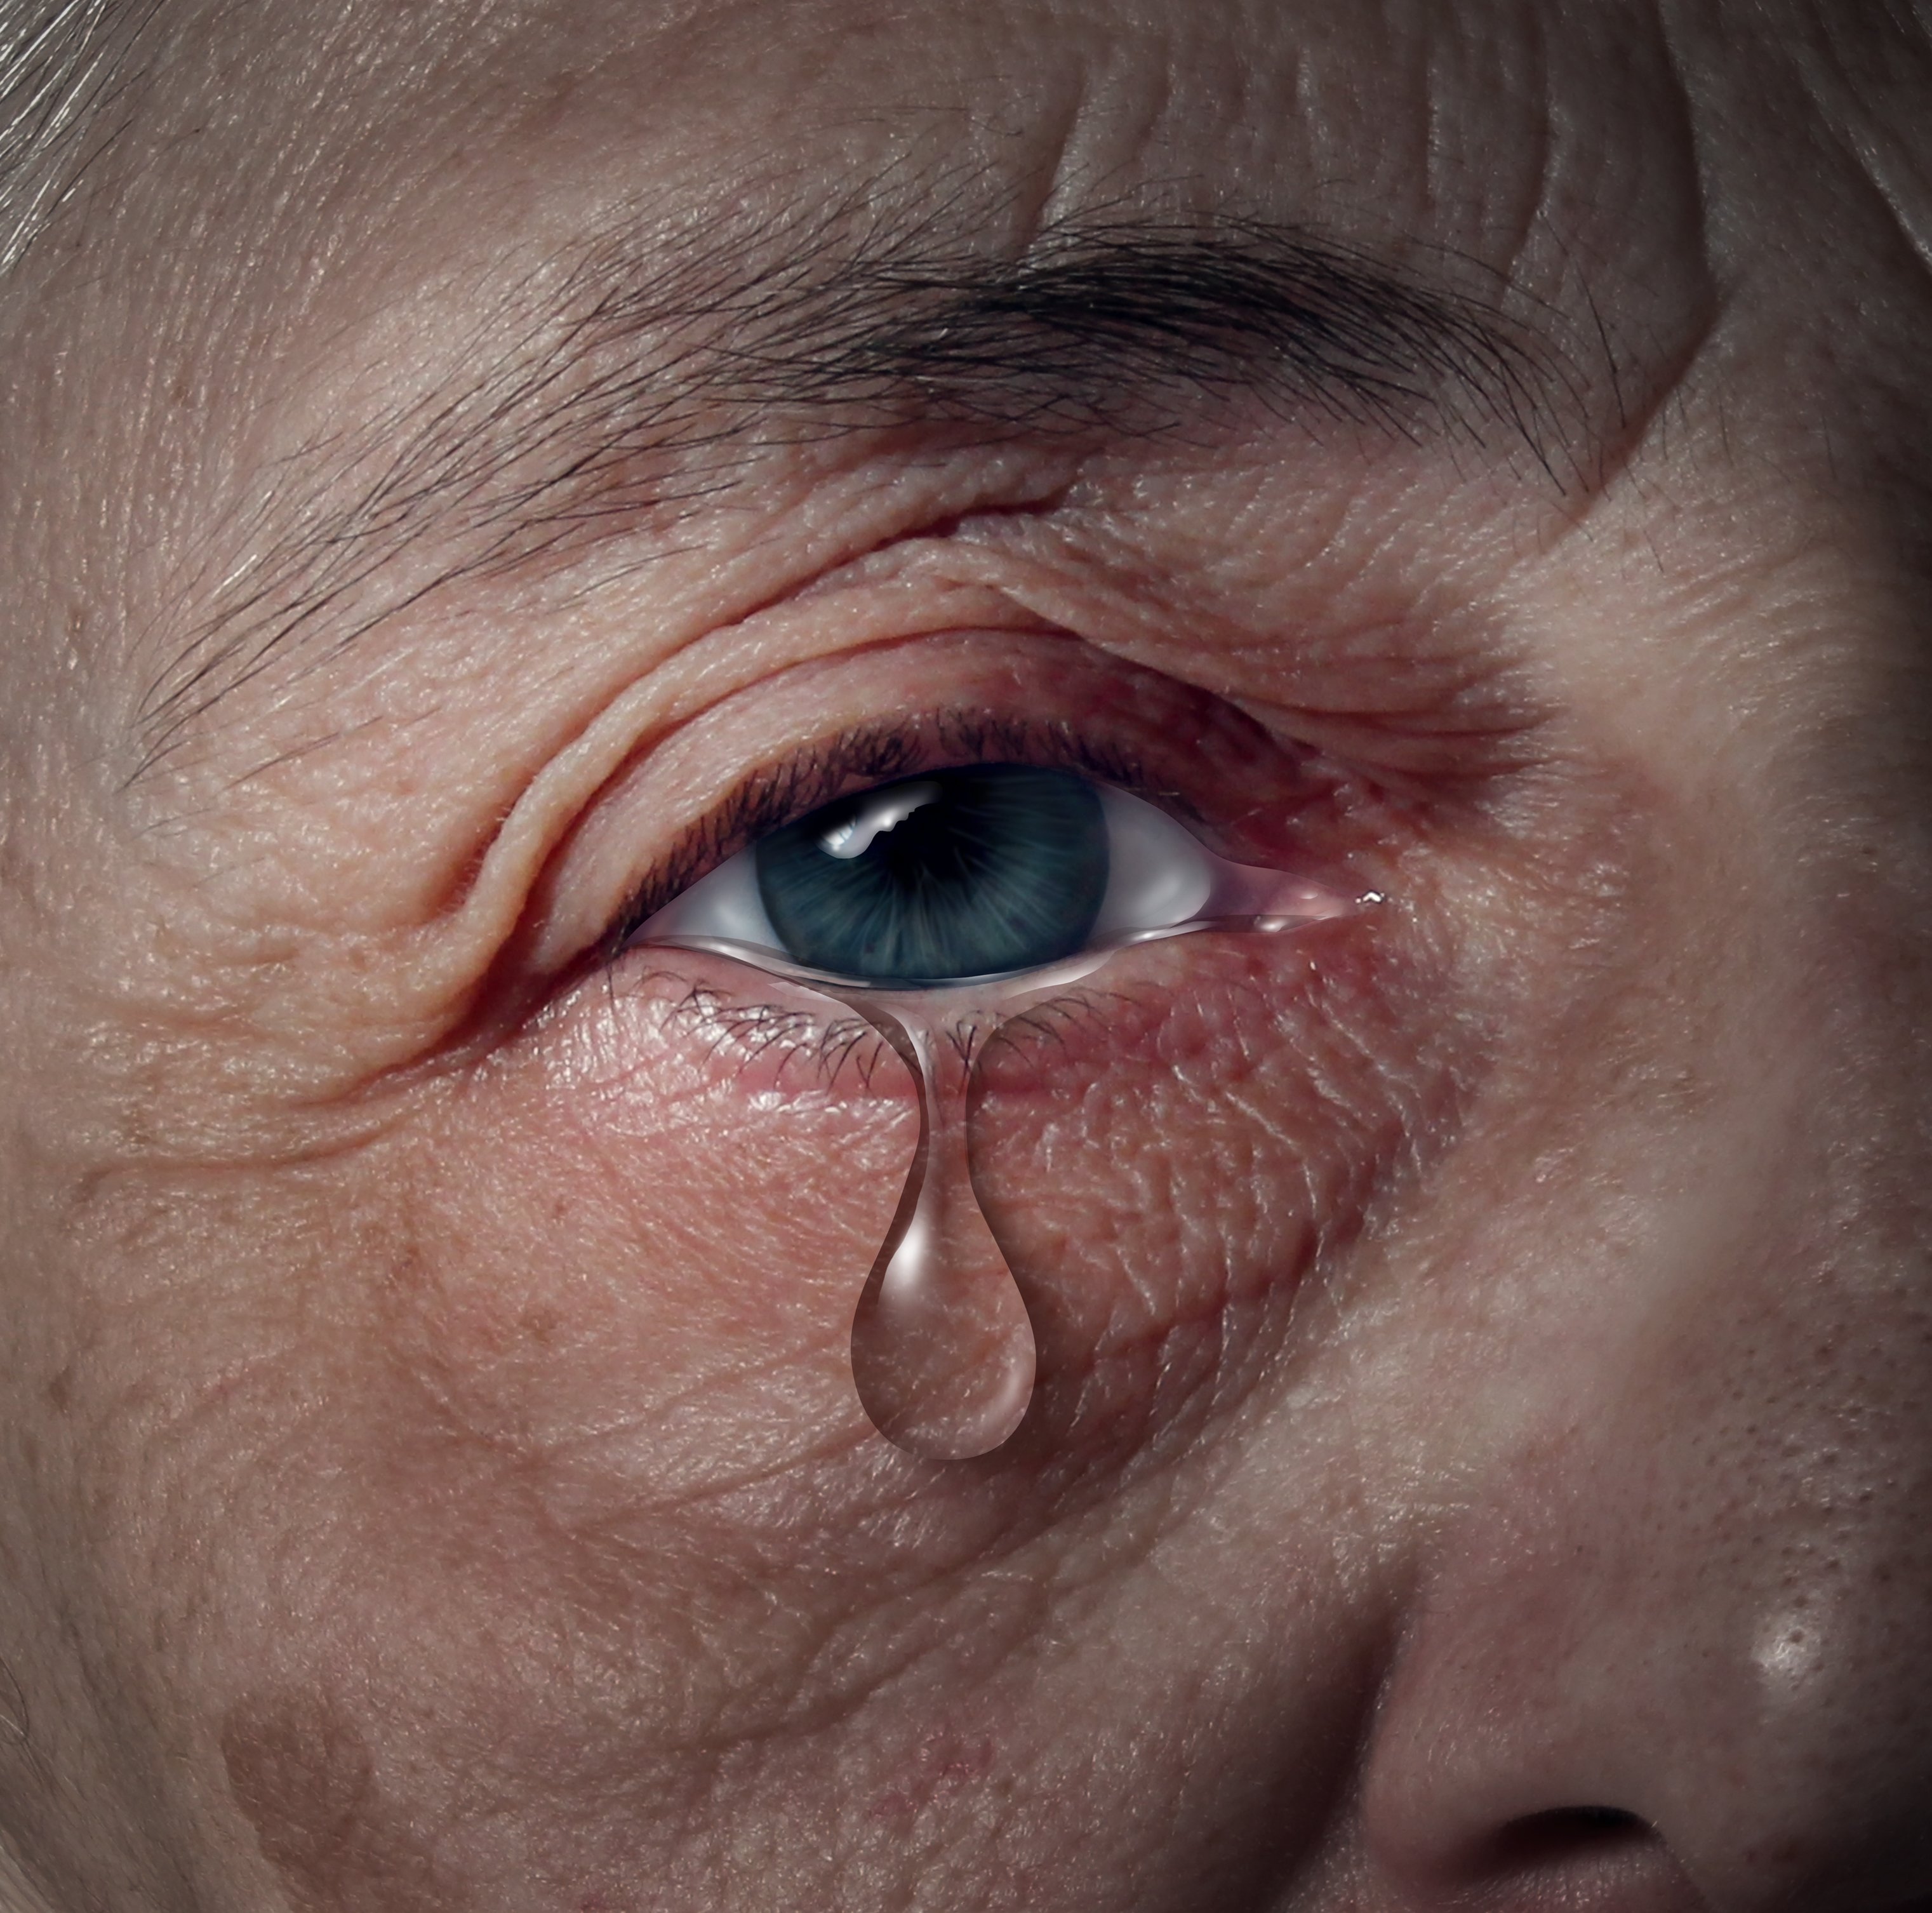 Eine Träne, die aus dem Auge einer älteren Person fällt. | Quelle: Shutterstock